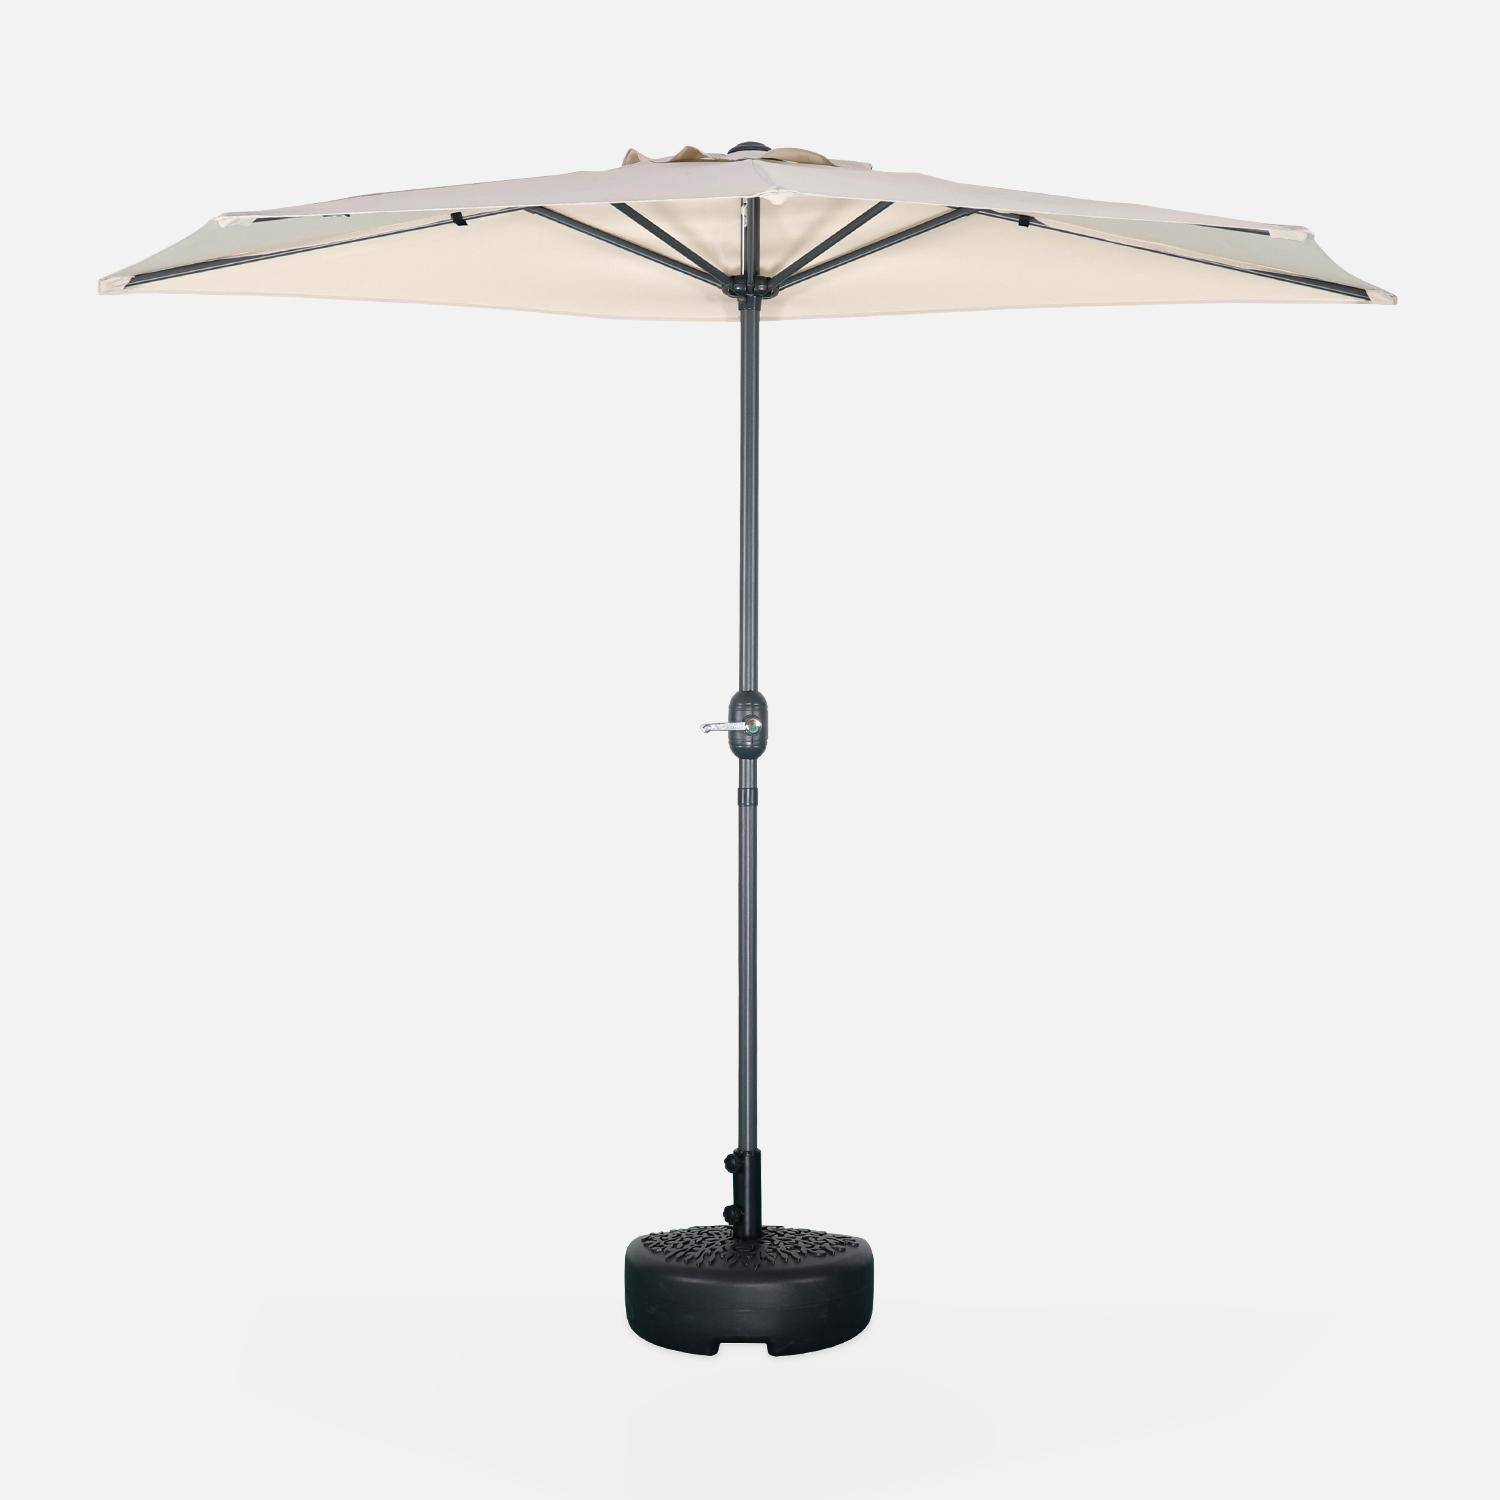 Ombrellone da balcone Ø250cm - CALVI - Mezzo ombrellone dritto, palo in alluminio con manovella, telo colore sabbia,sweeek,Photo3